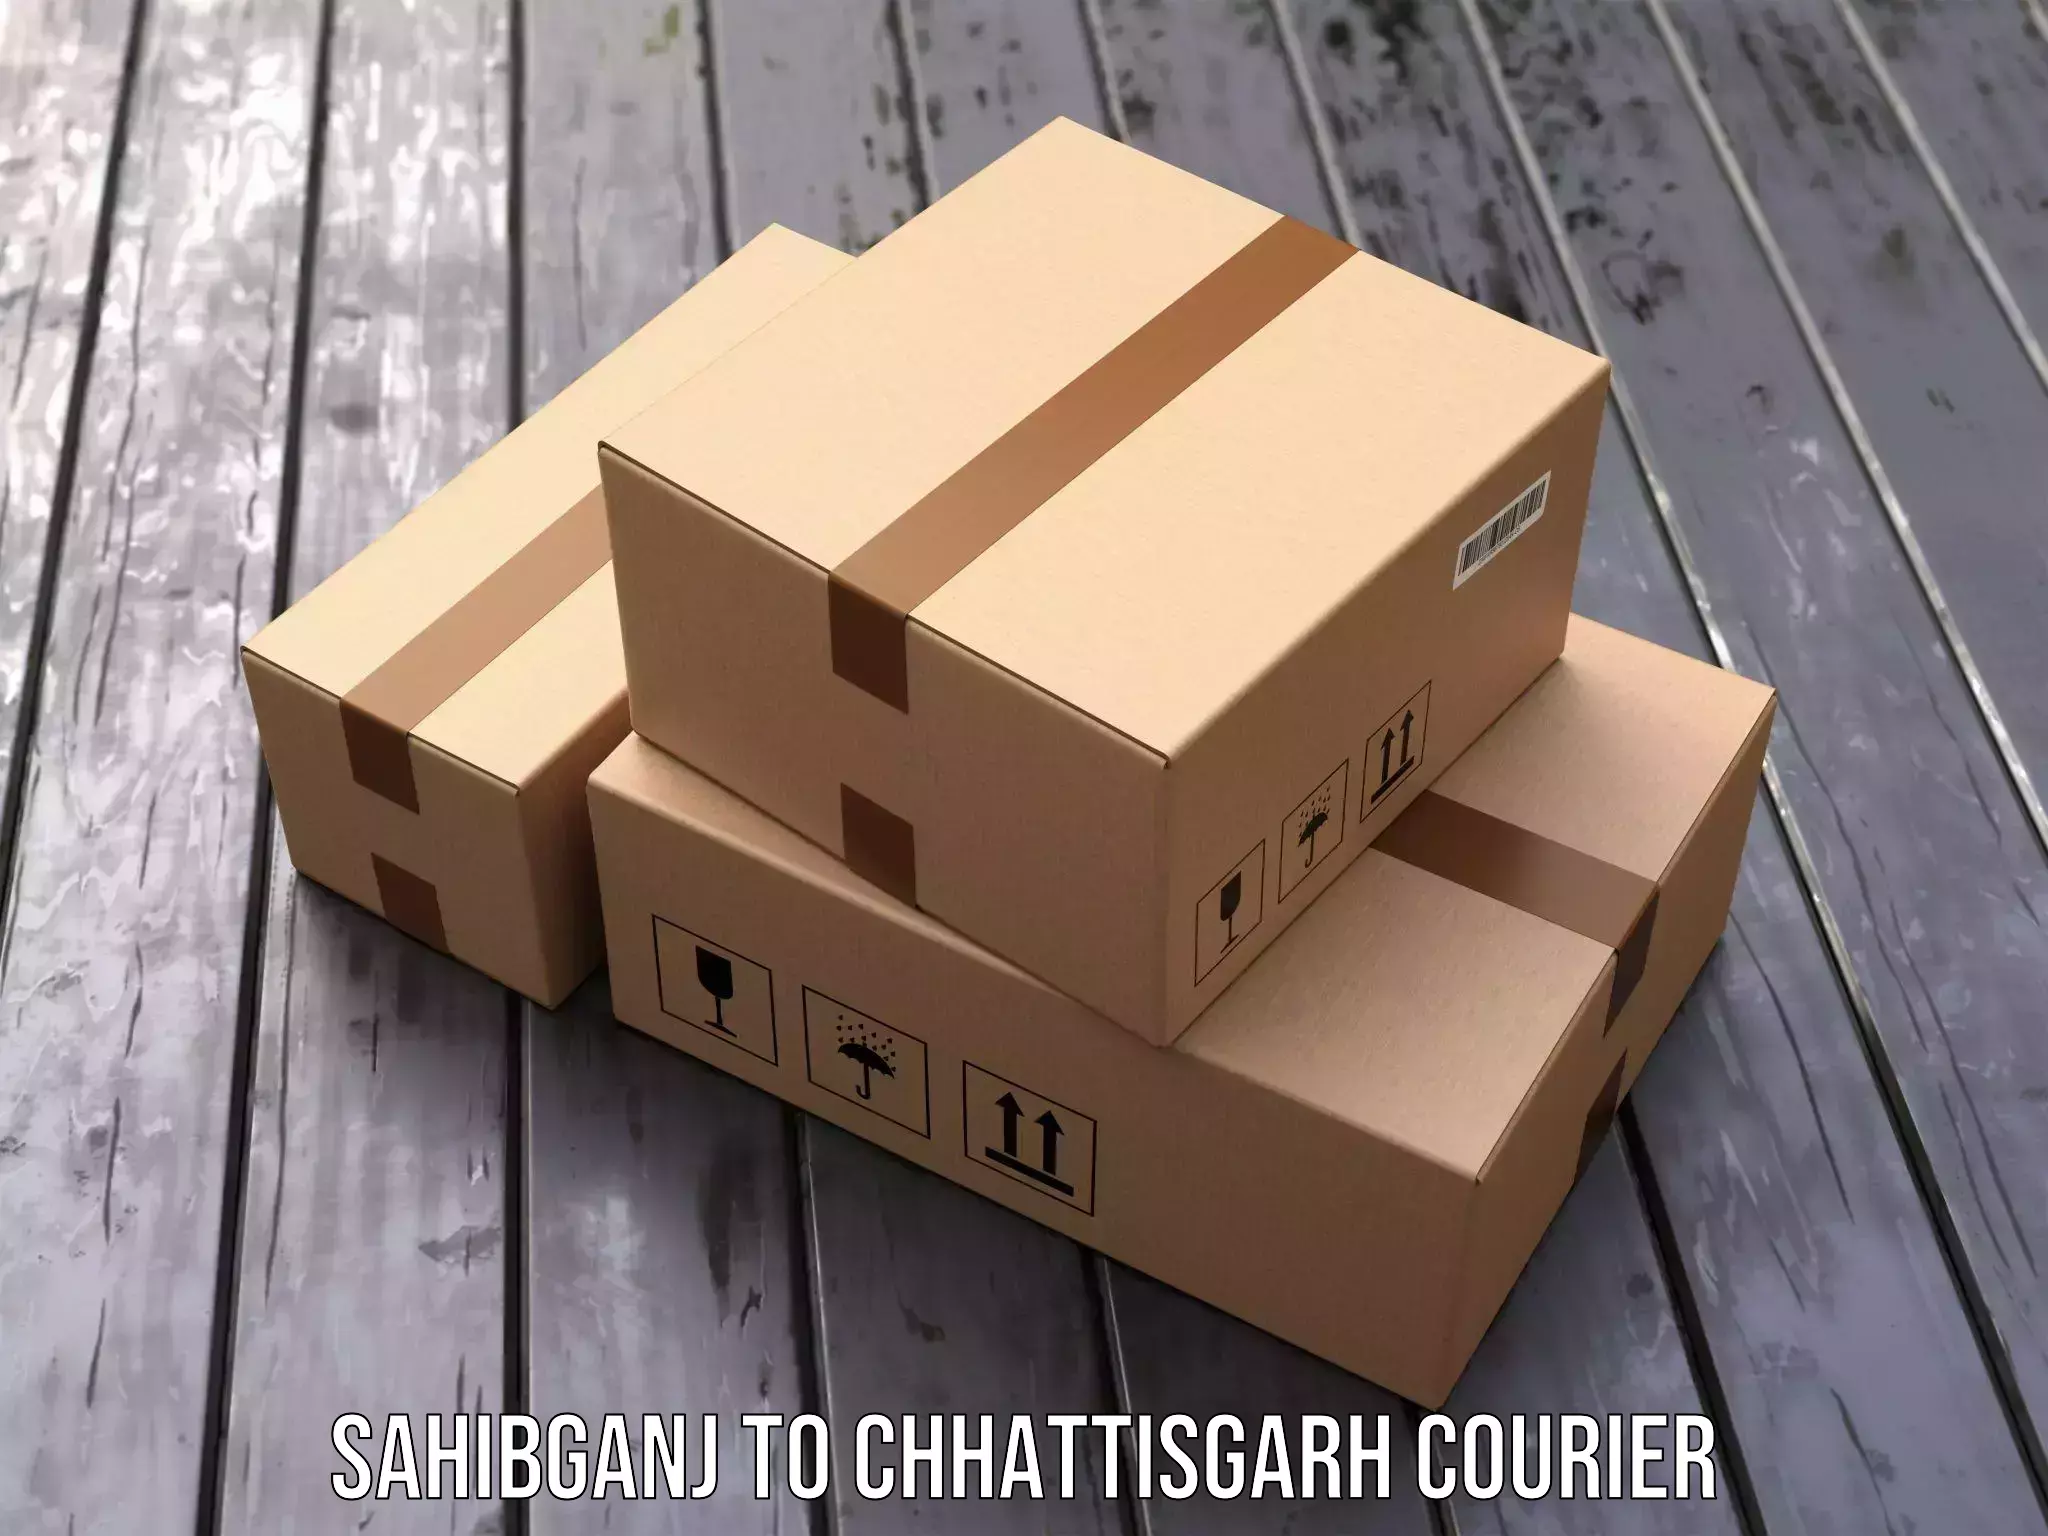 On-demand shipping options Sahibganj to Chhattisgarh